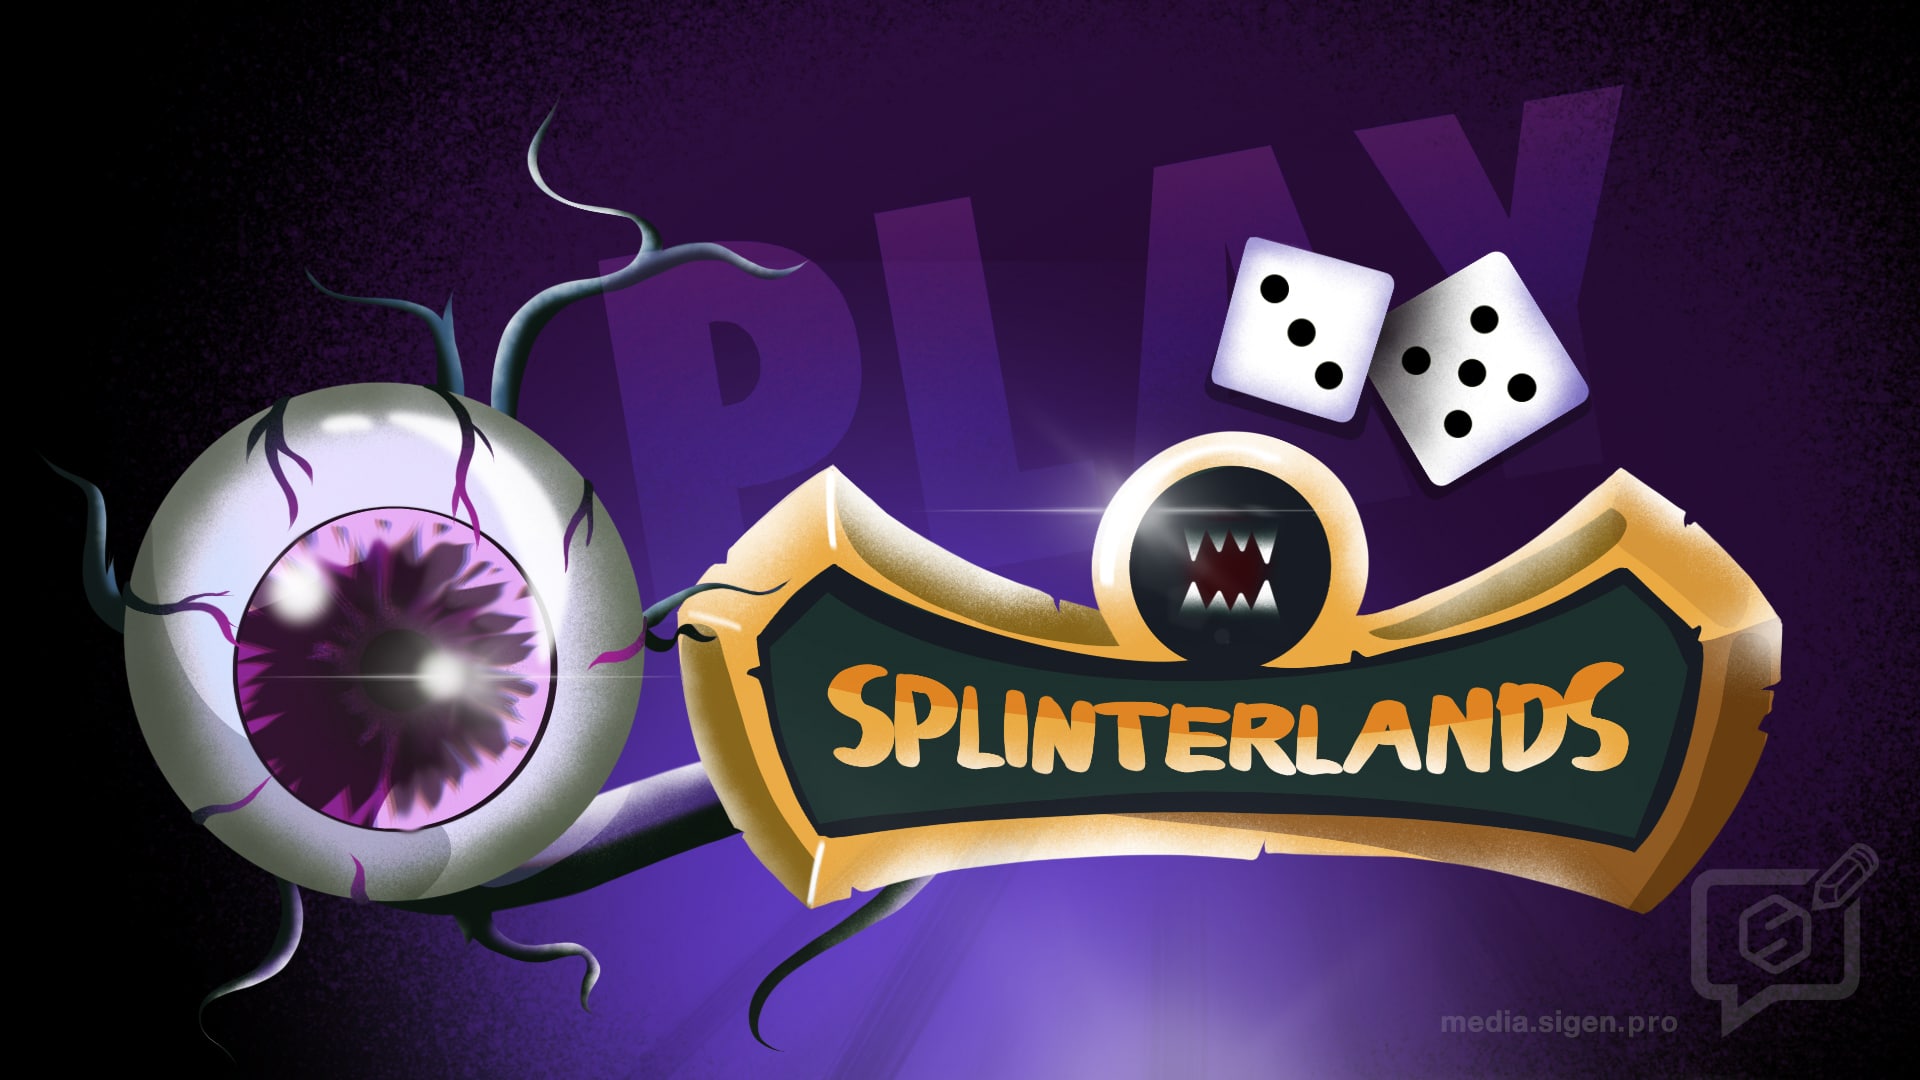 Splinterlands – цифровая карточная игра, основанная на блокчейне Hive.